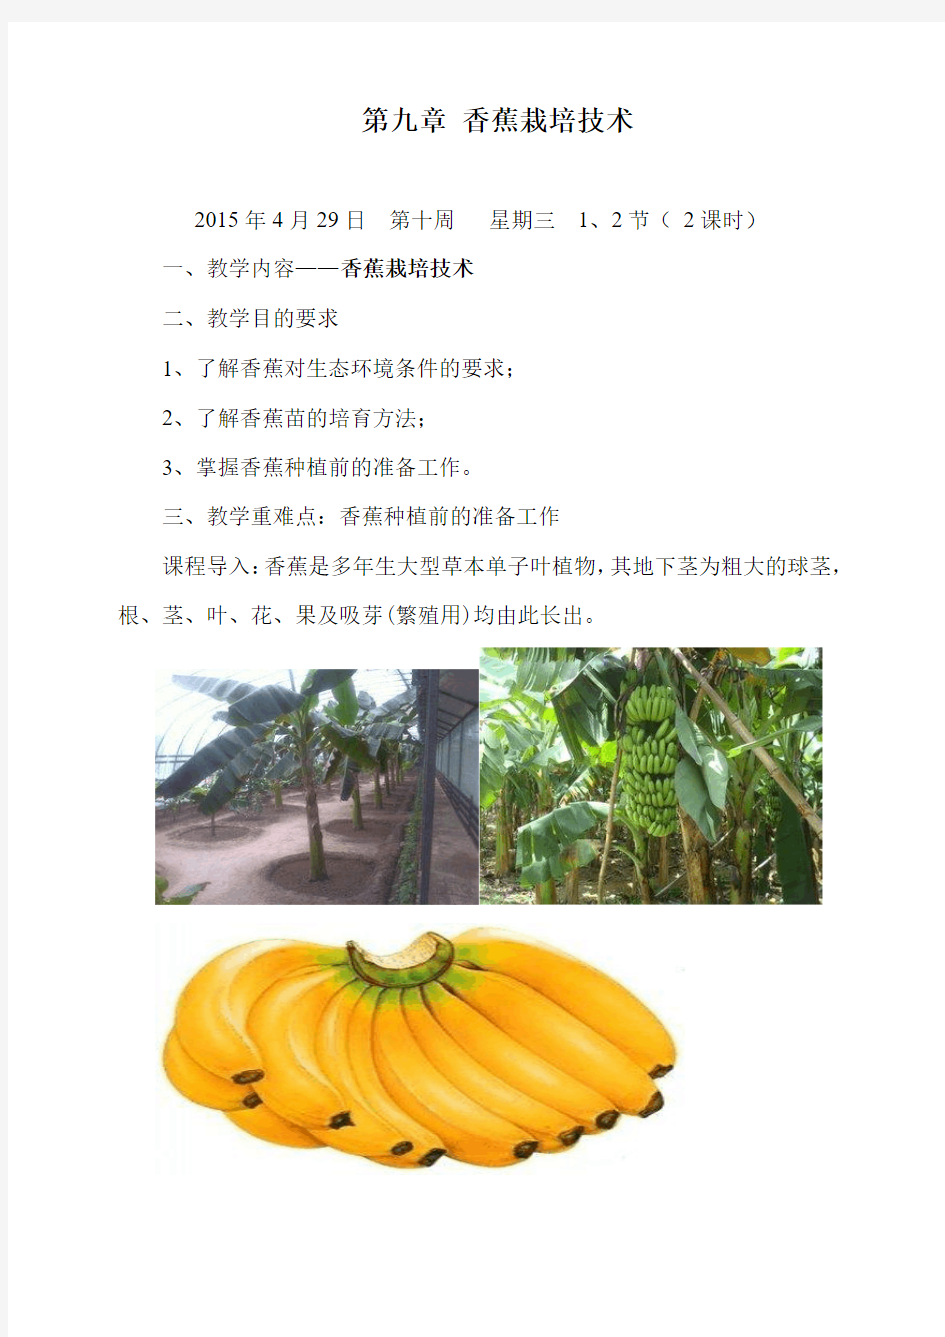 第九章 香蕉栽培技术